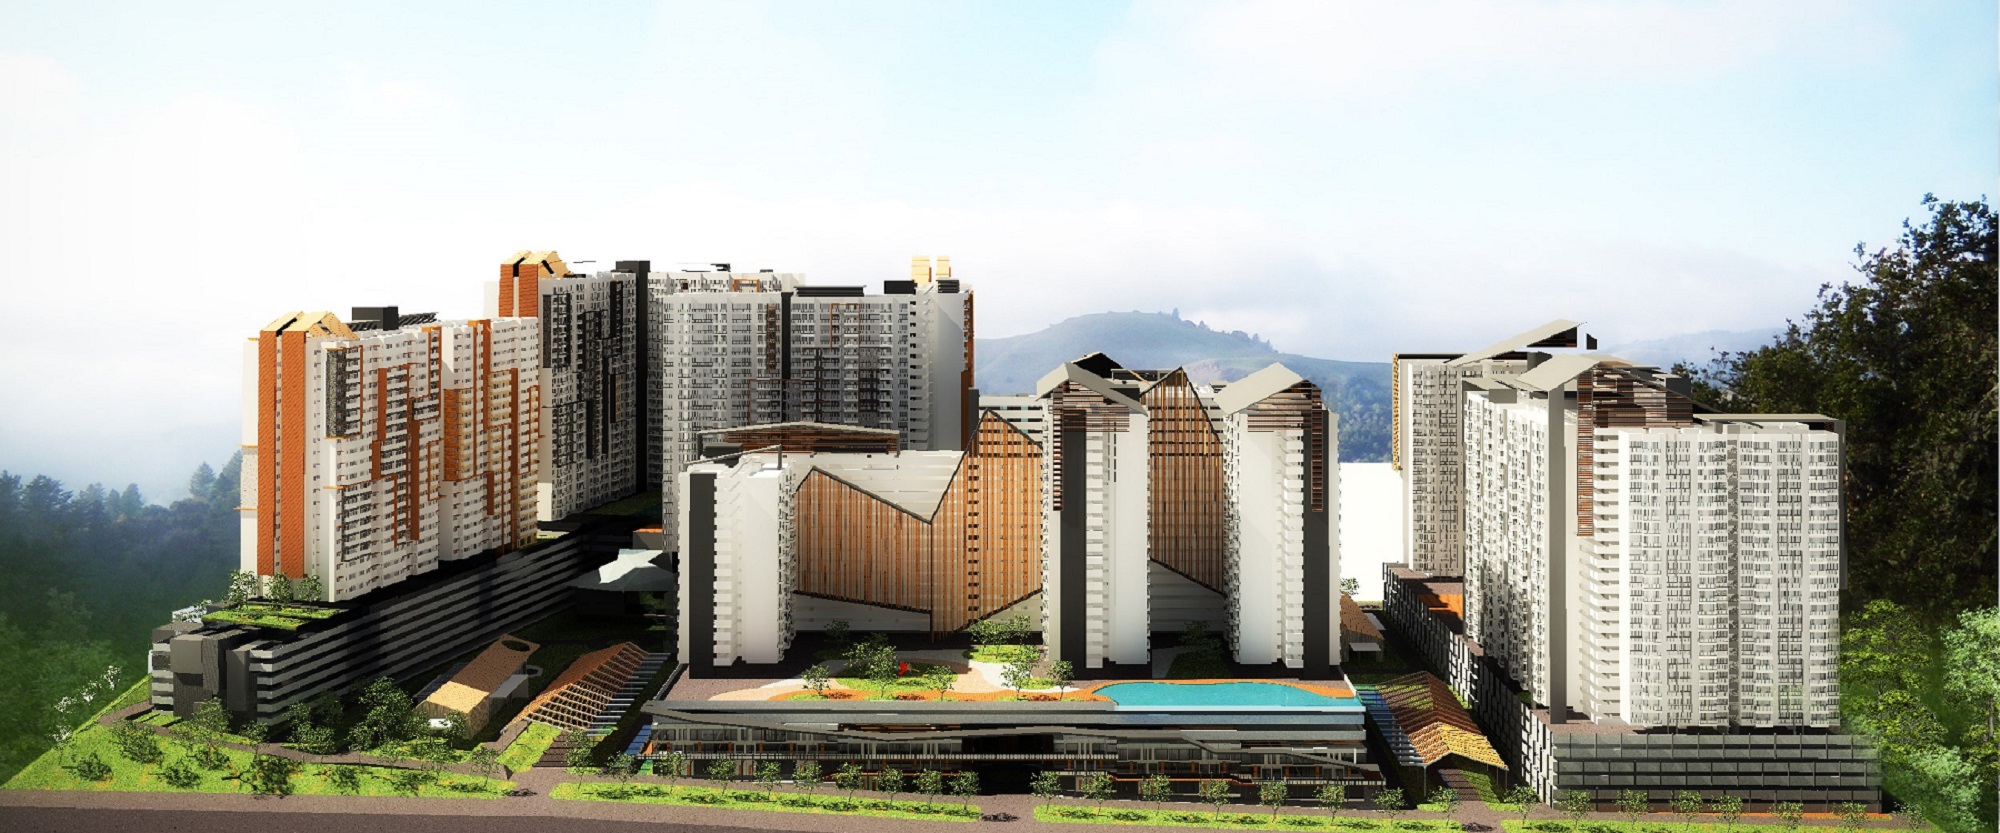 Kajang 27acre Residential Development Masterplan